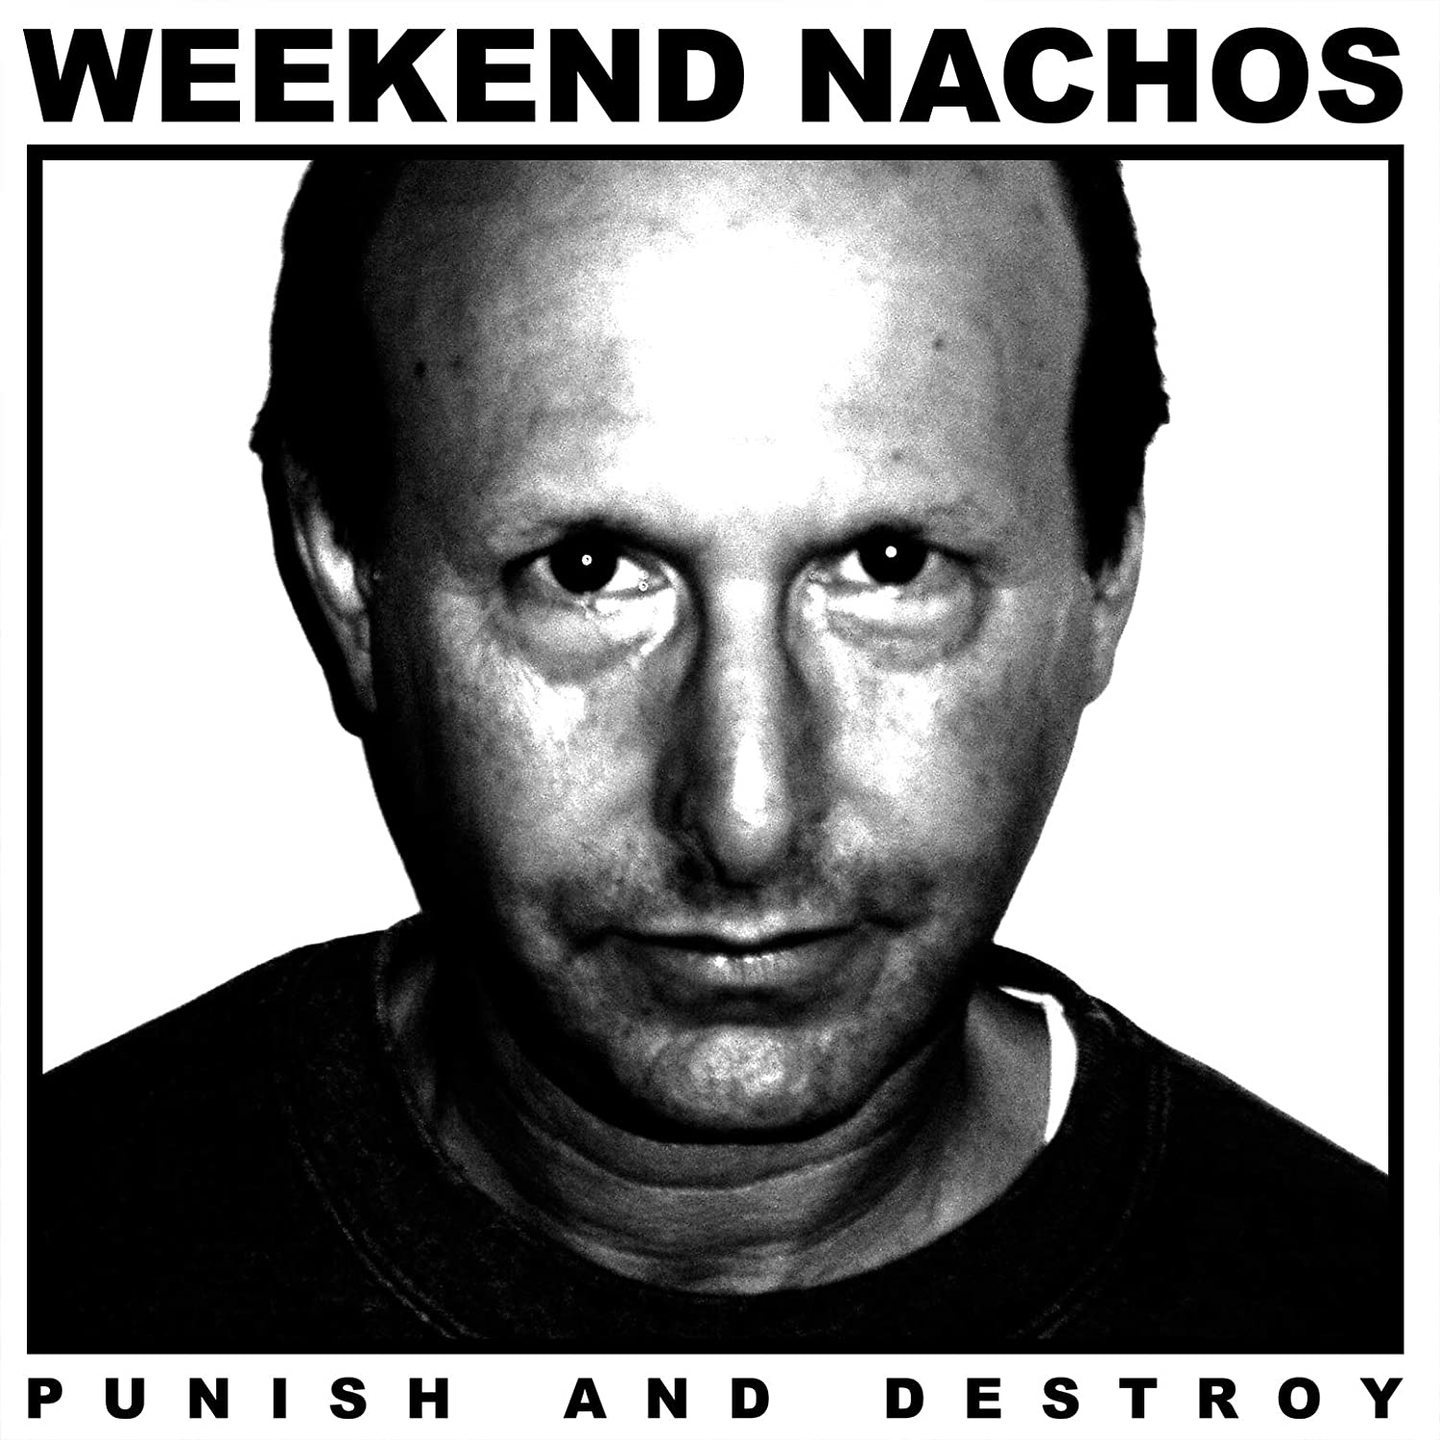 WEEKEND NACHOS - Punish And Destroy LP